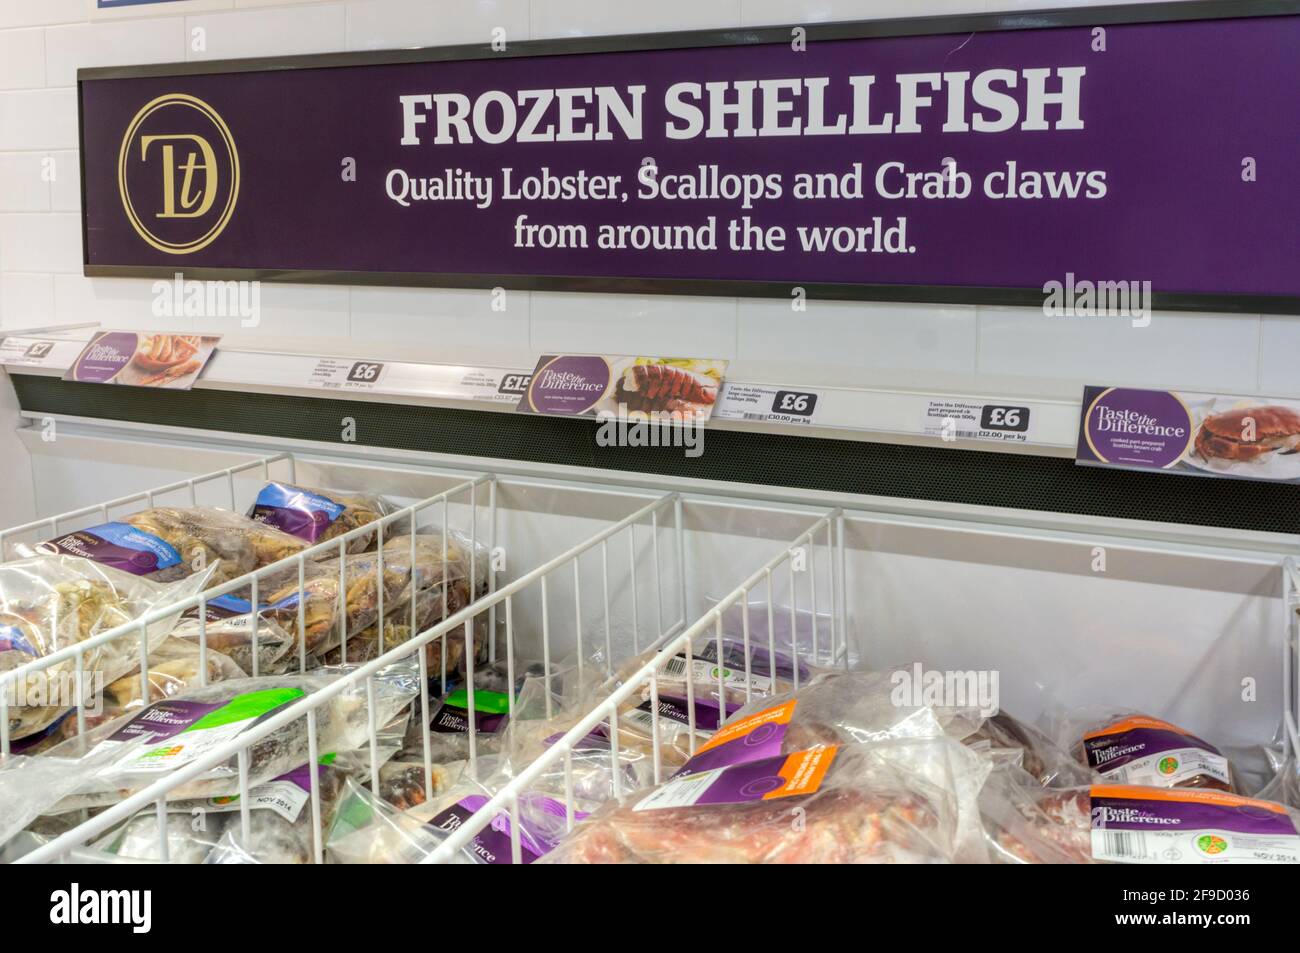 Zeichen für Sainsbury's Geschmack der Unterschied gebrandmarkt gefrorene Schalentiere aus der ganzen Welt. Stockfoto